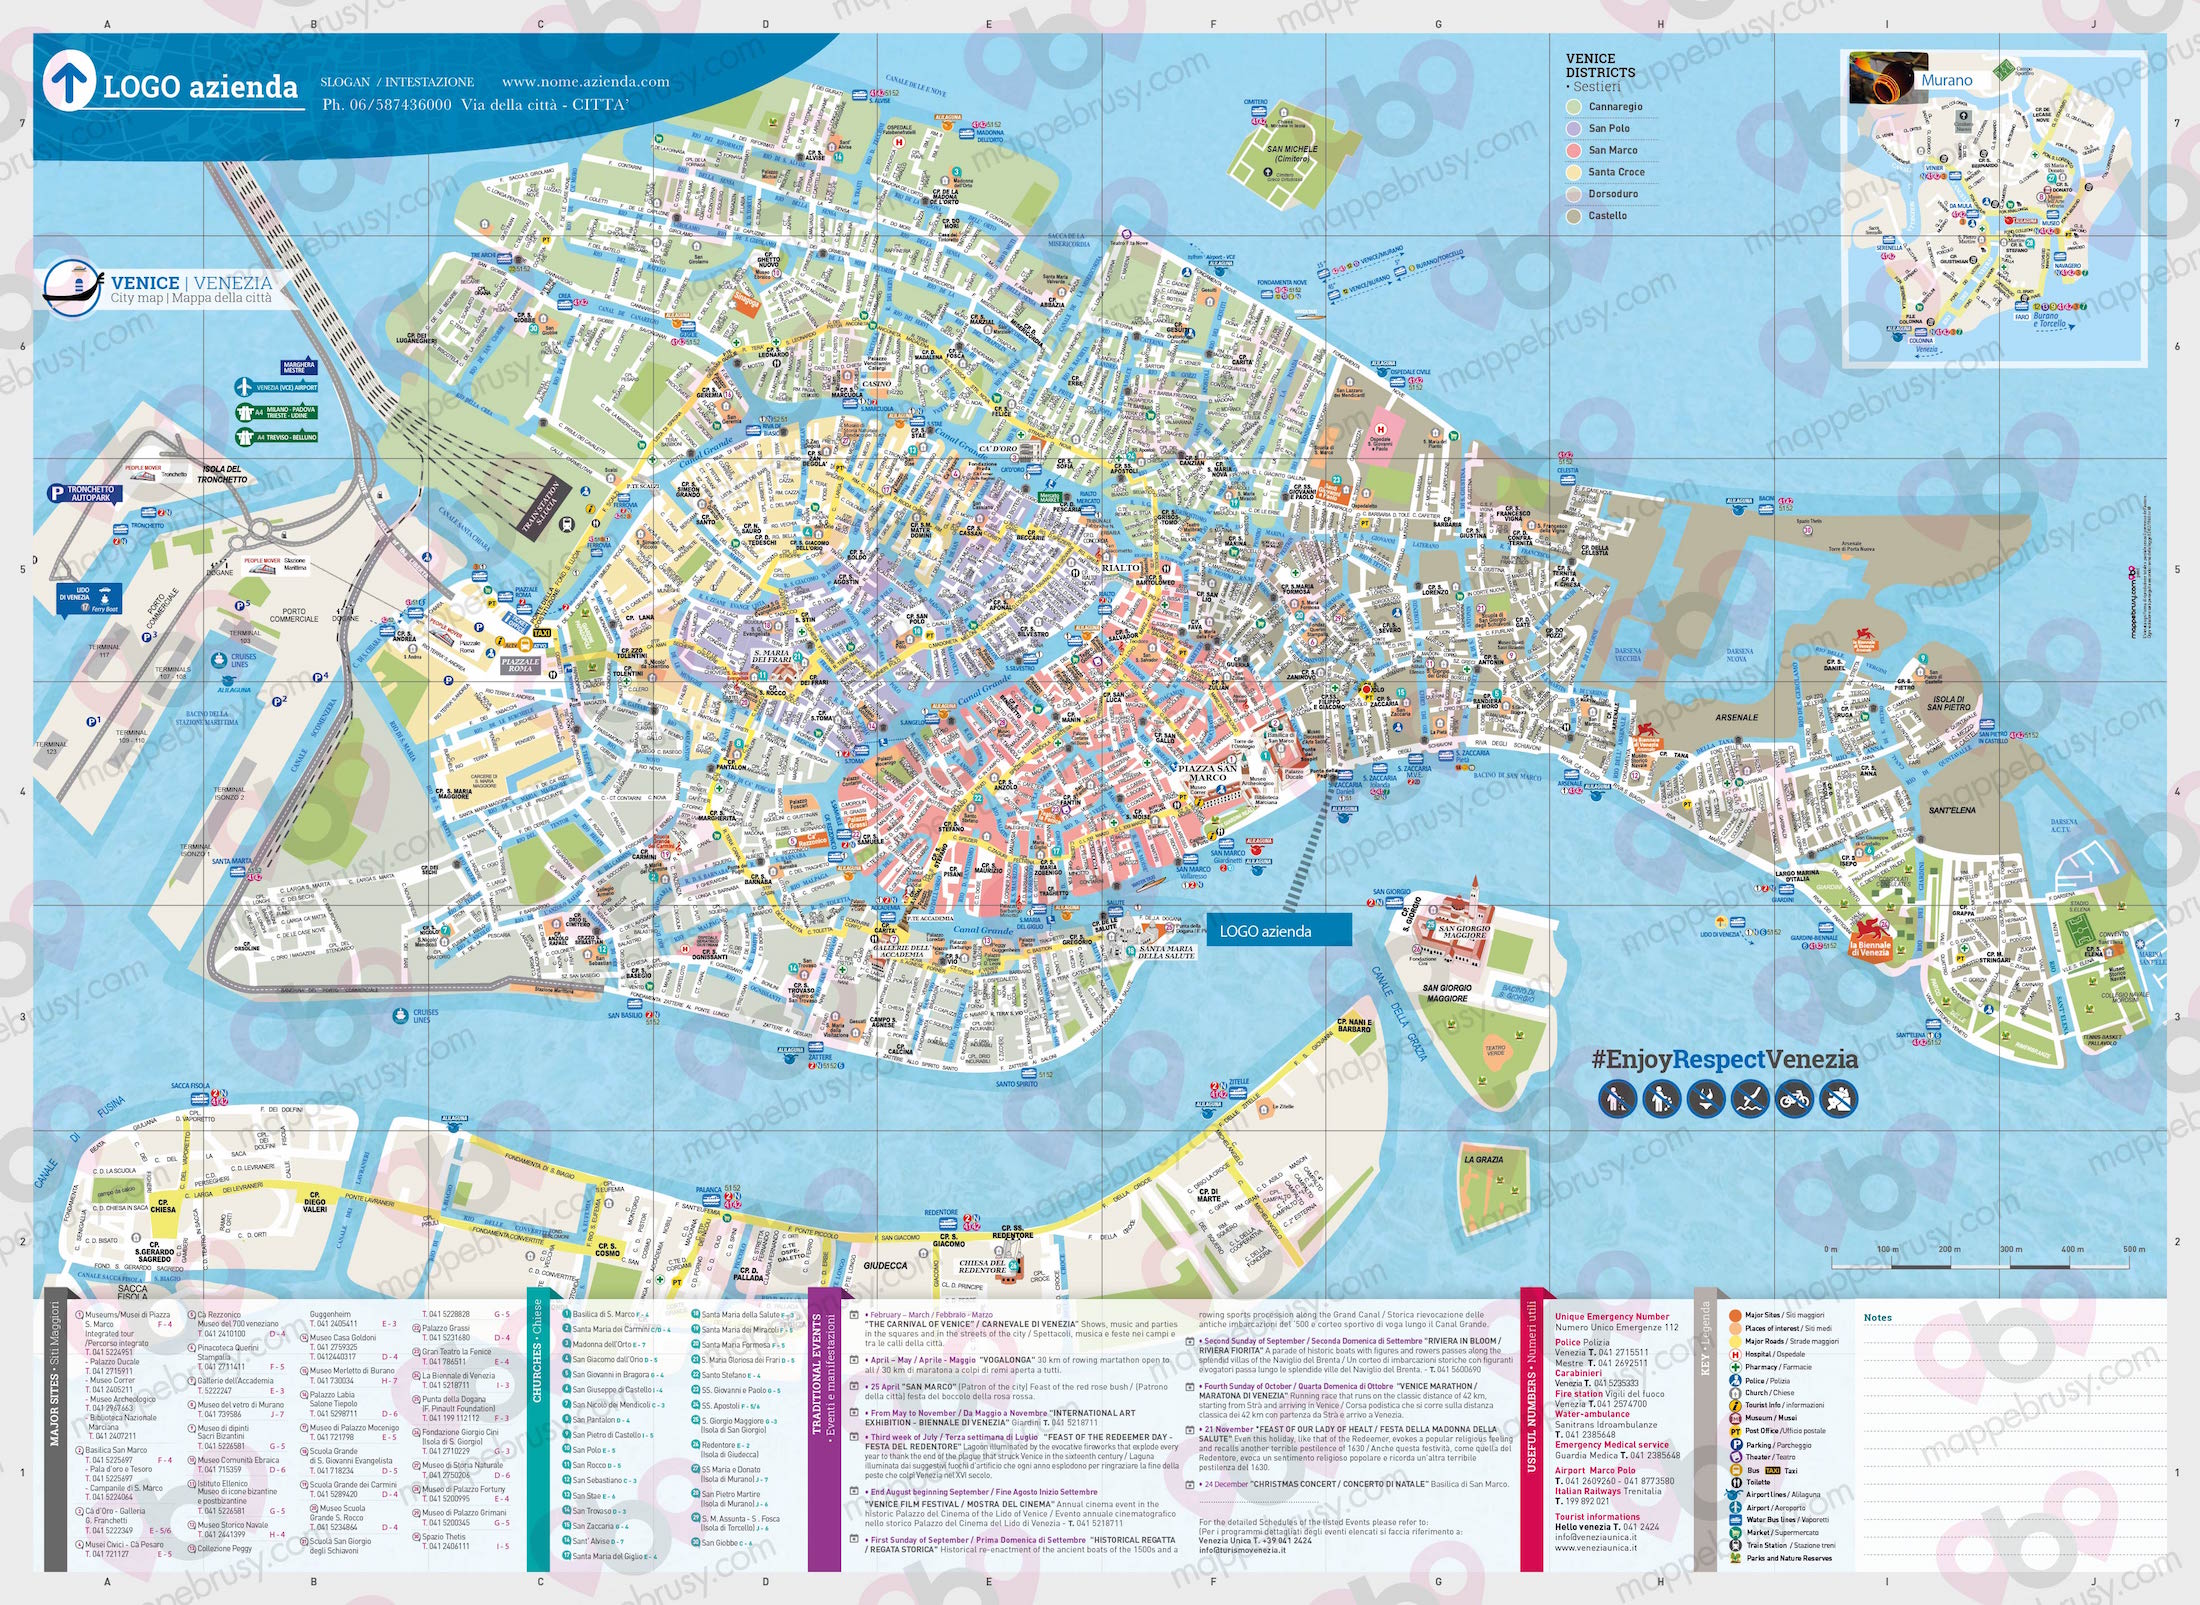 Mappa di Venezia - Venice city map - mappa Venezia - mappa personalizzata di Venezia - mappa tursitica di Venezia